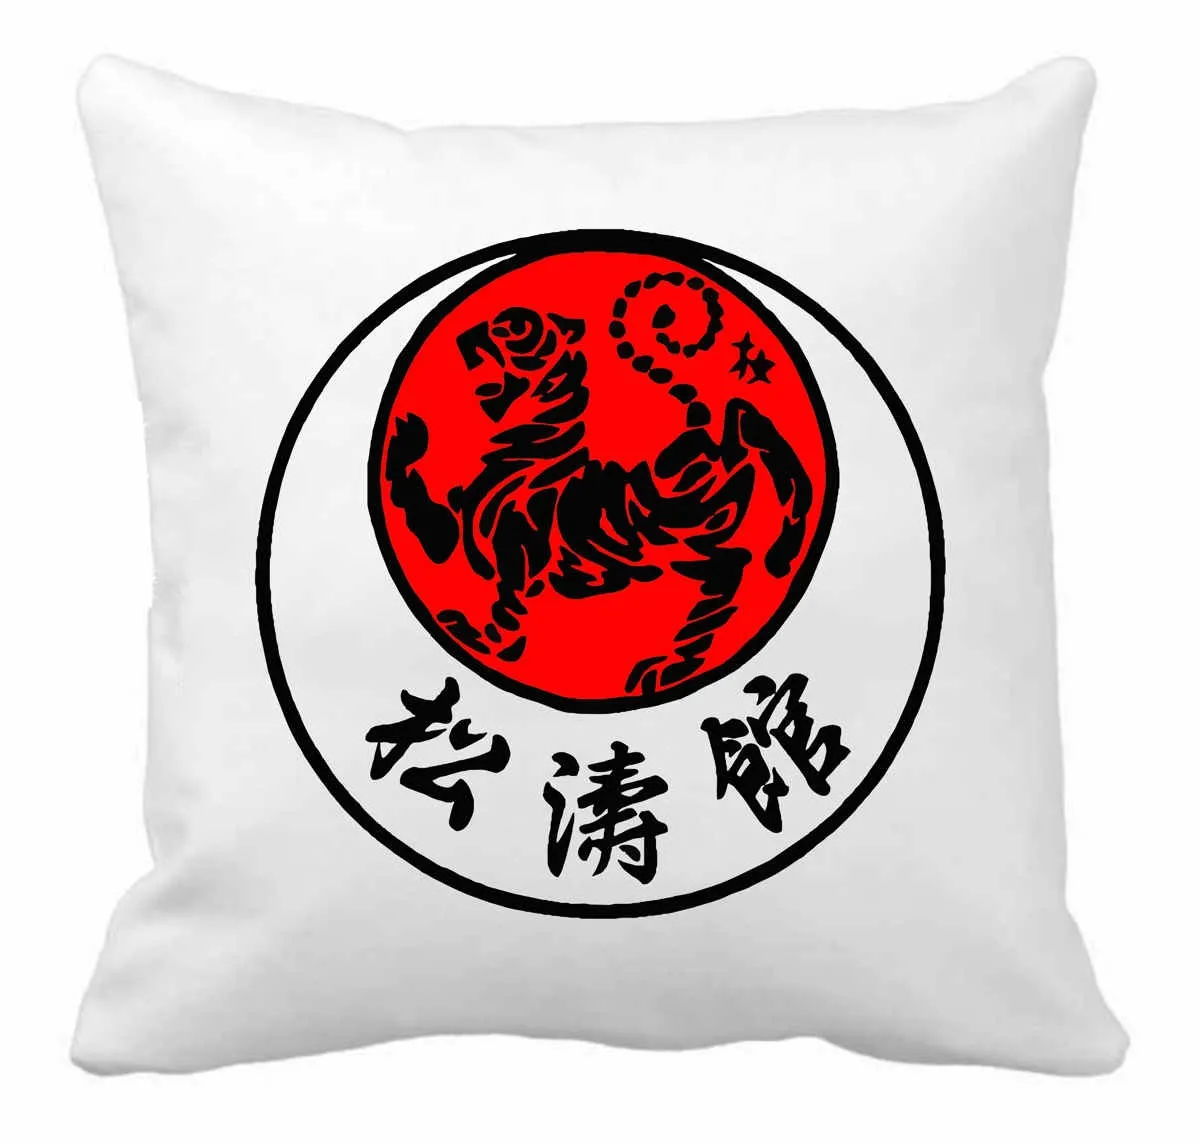 Shotokan Karate cushion